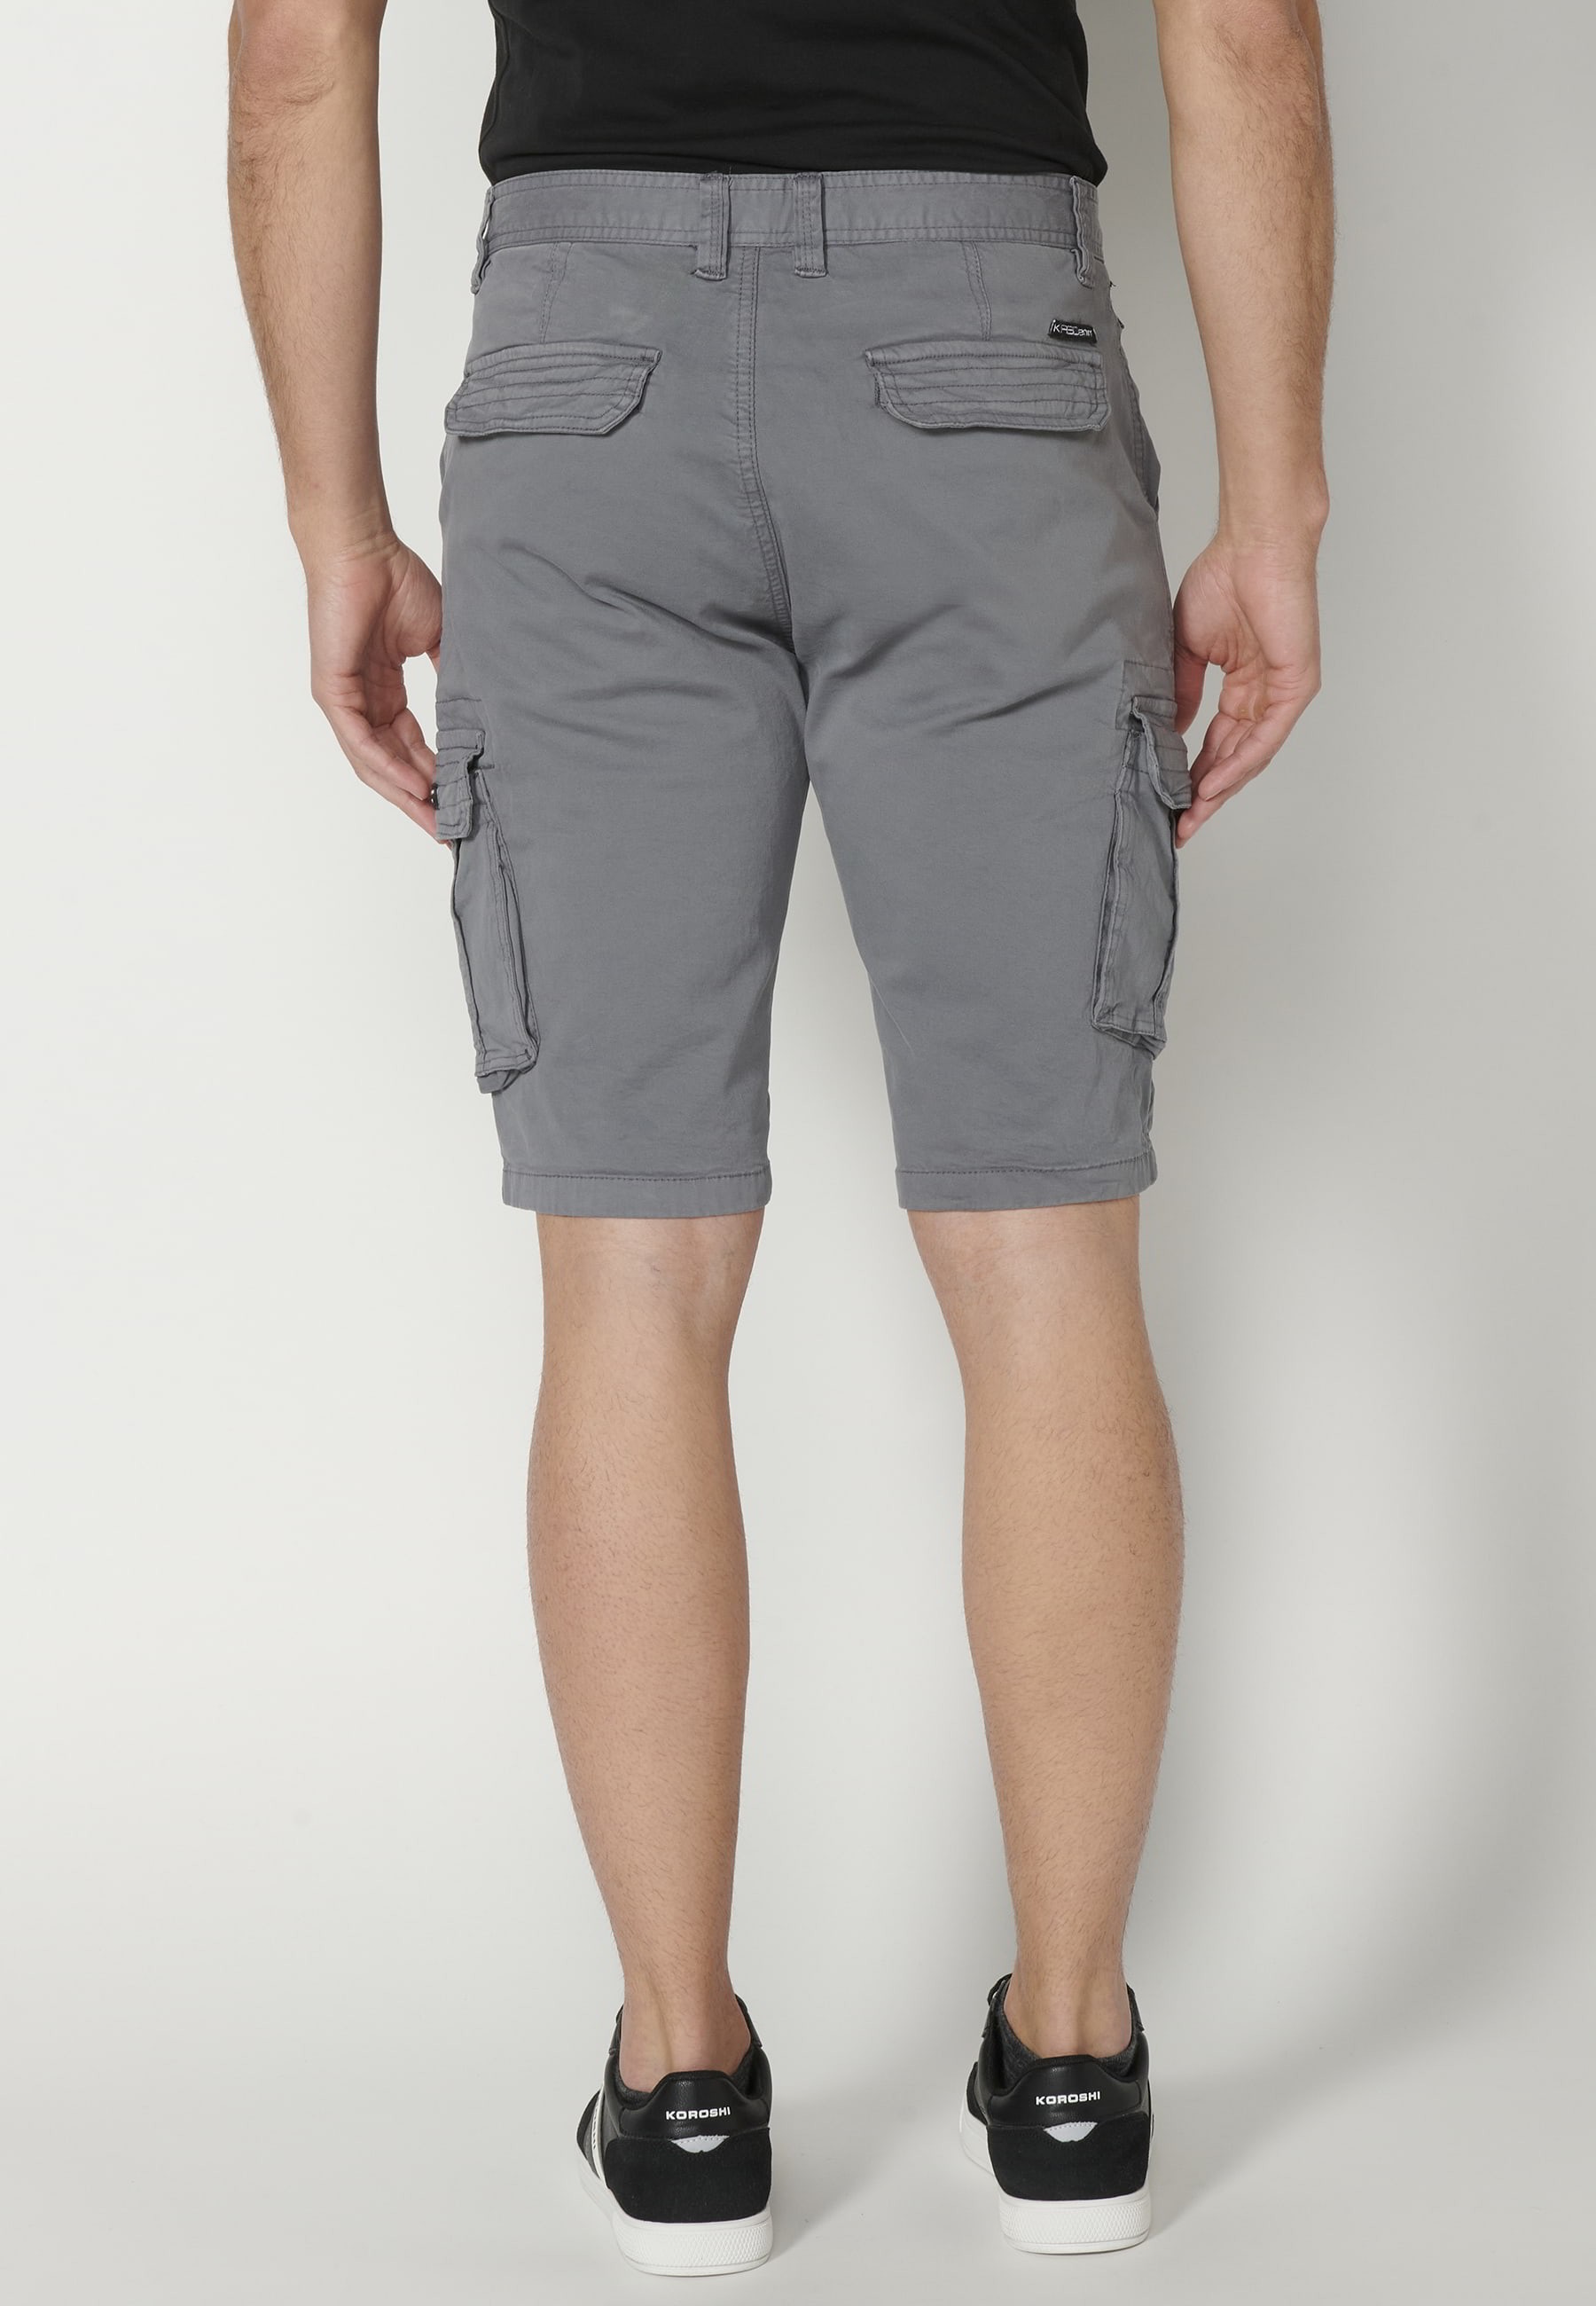 Pantalons curts Bermuda estil càrrec color Gris per a Home